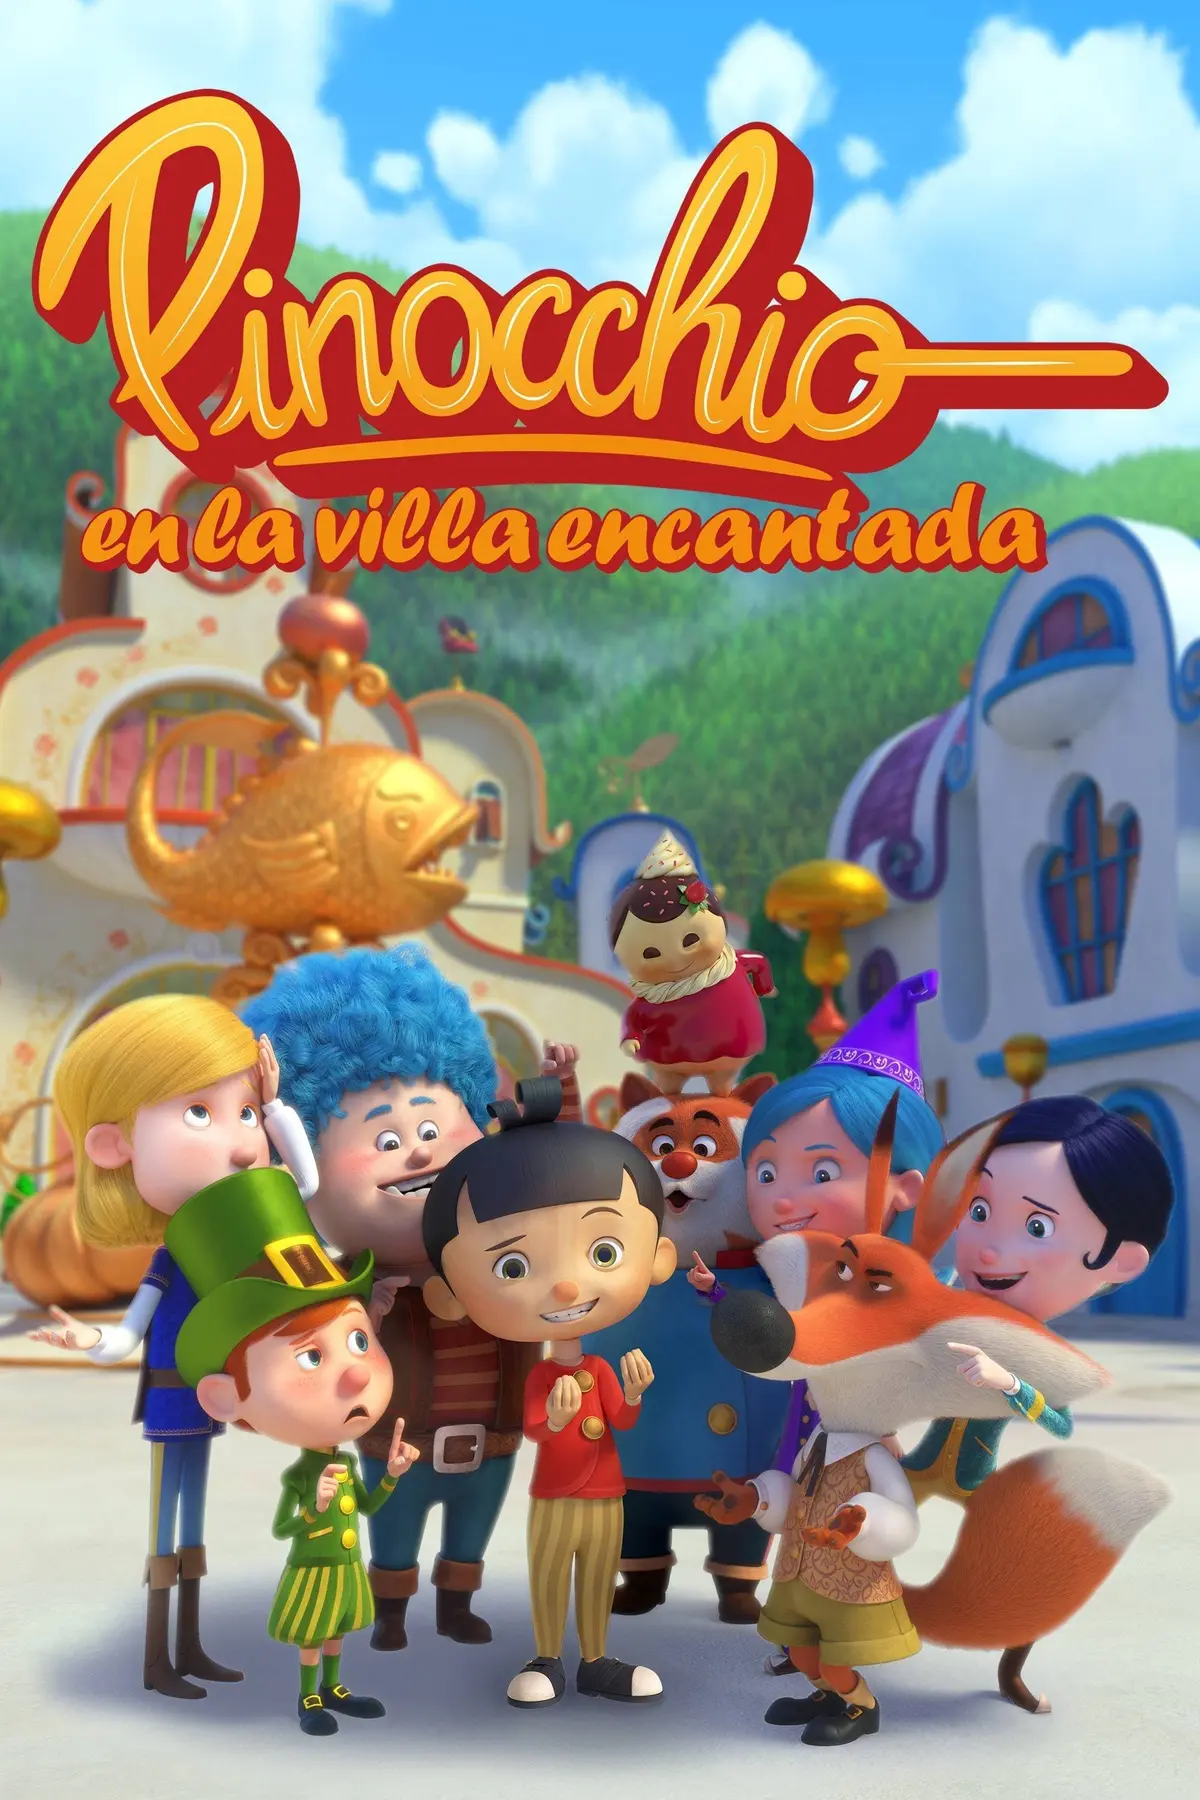 Le village enchanté de Pinocchio